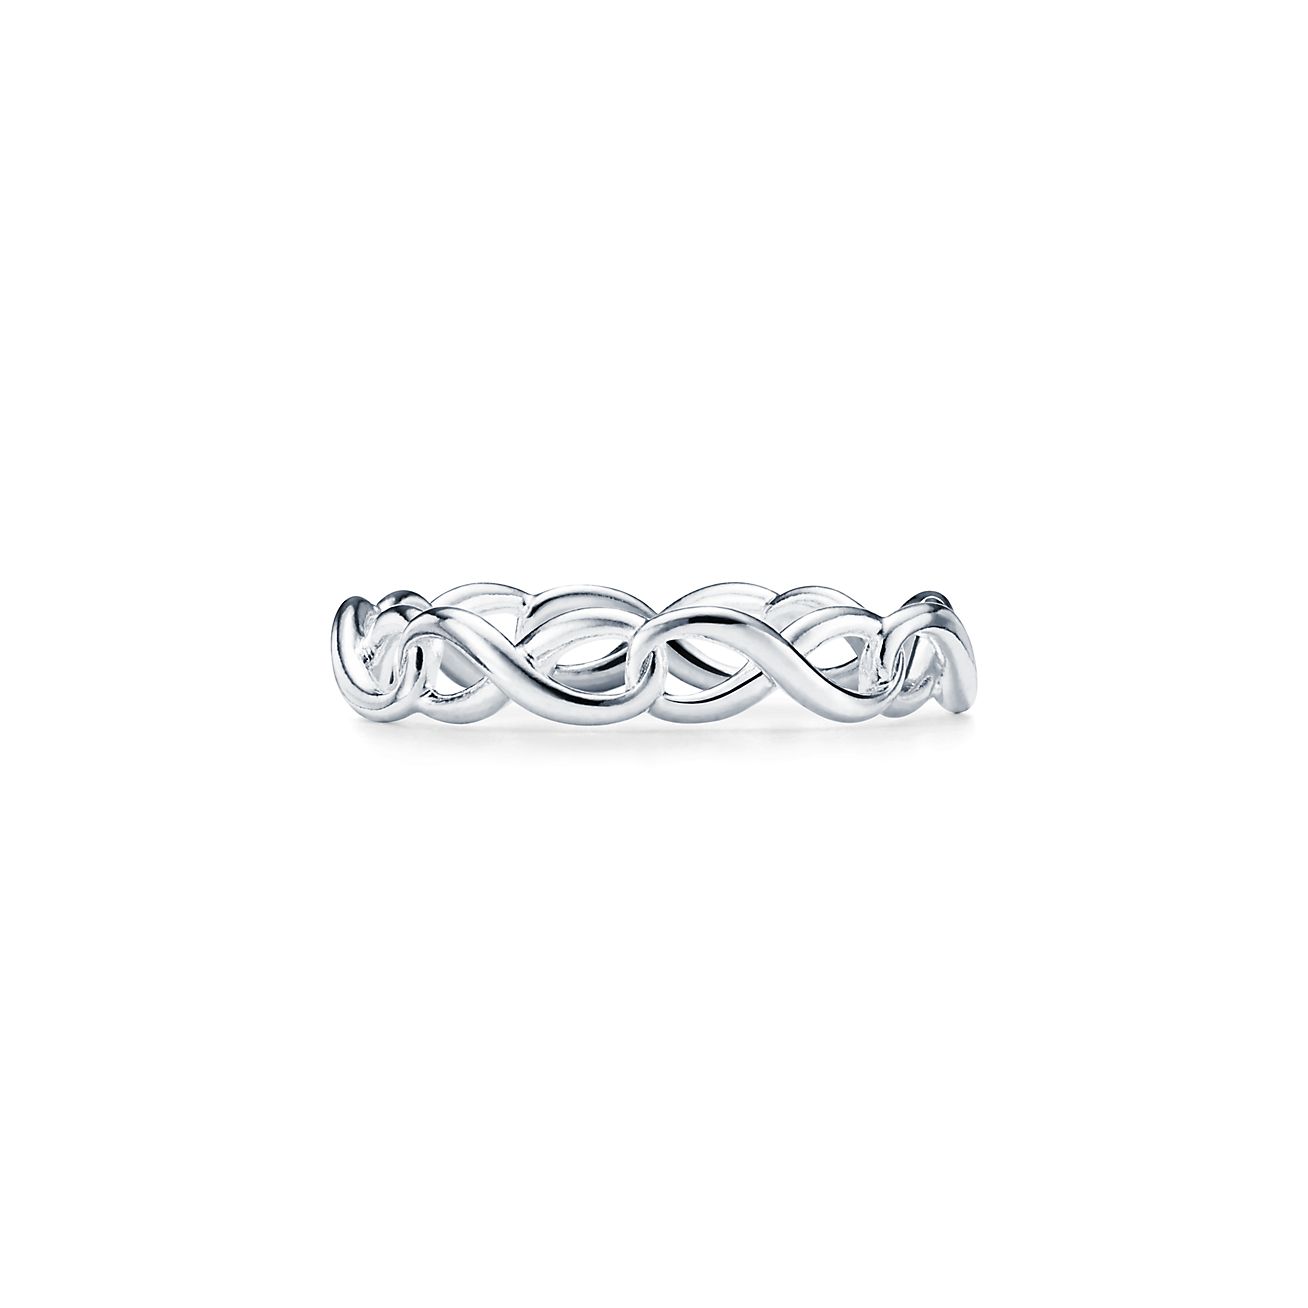 Tiffany Infinity narrow band ring in 